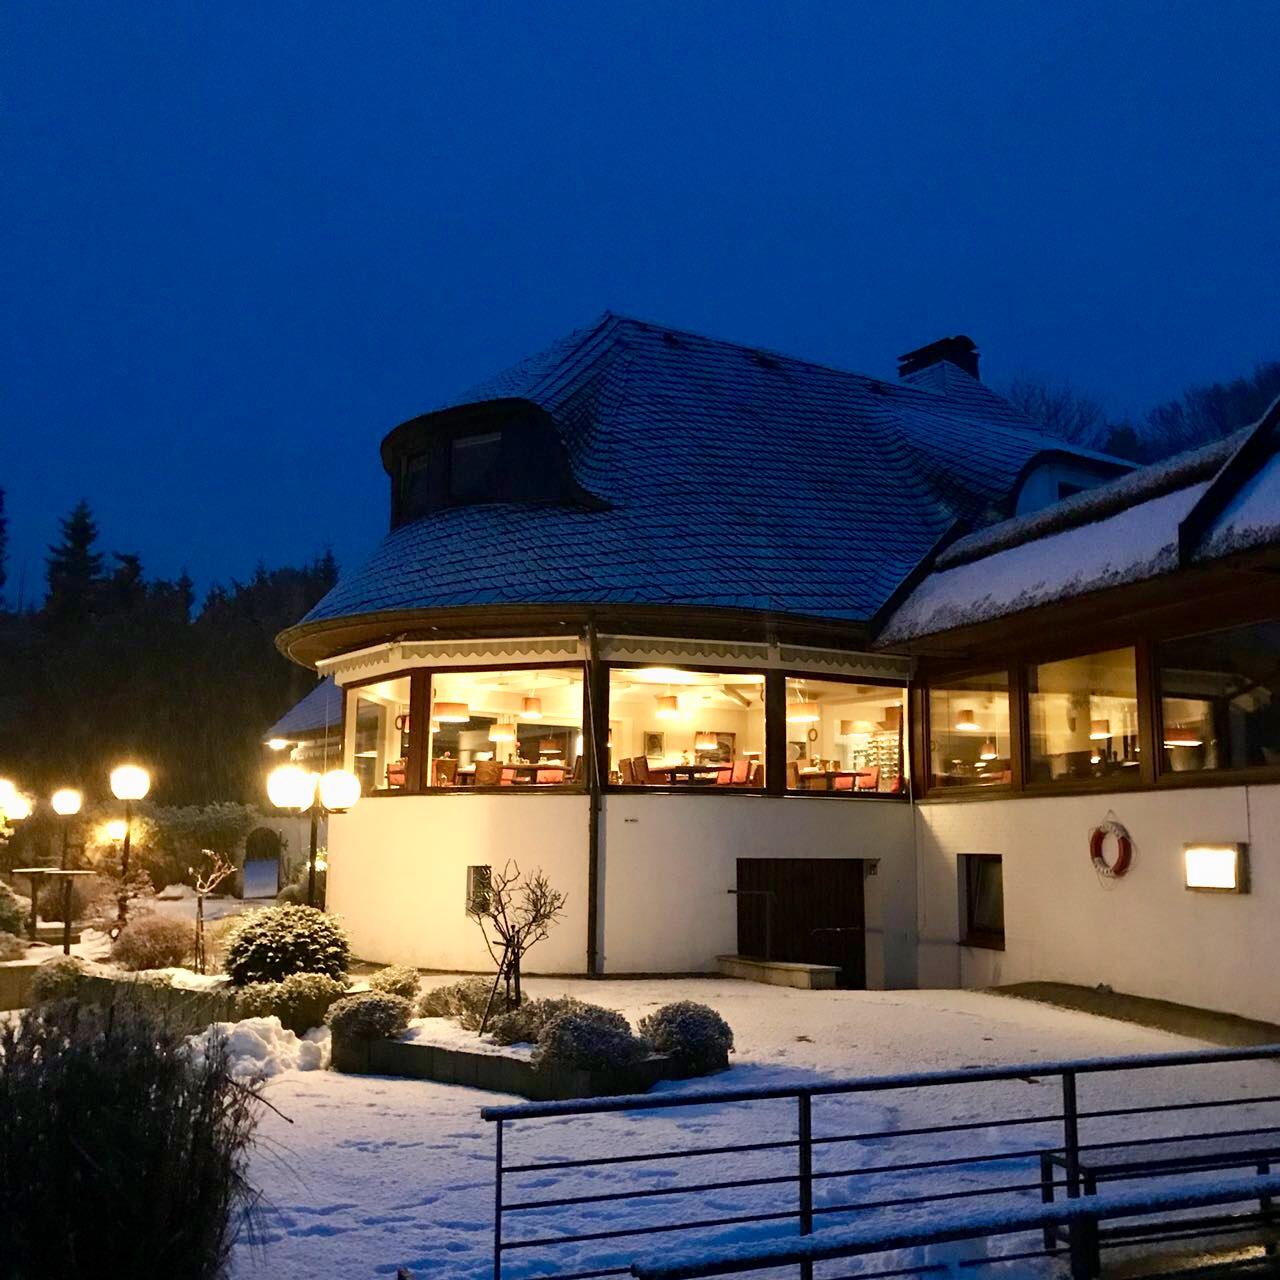 Restaurant "Fischerklause am  und Bootshaus der Fischerklause" in Lütjensee